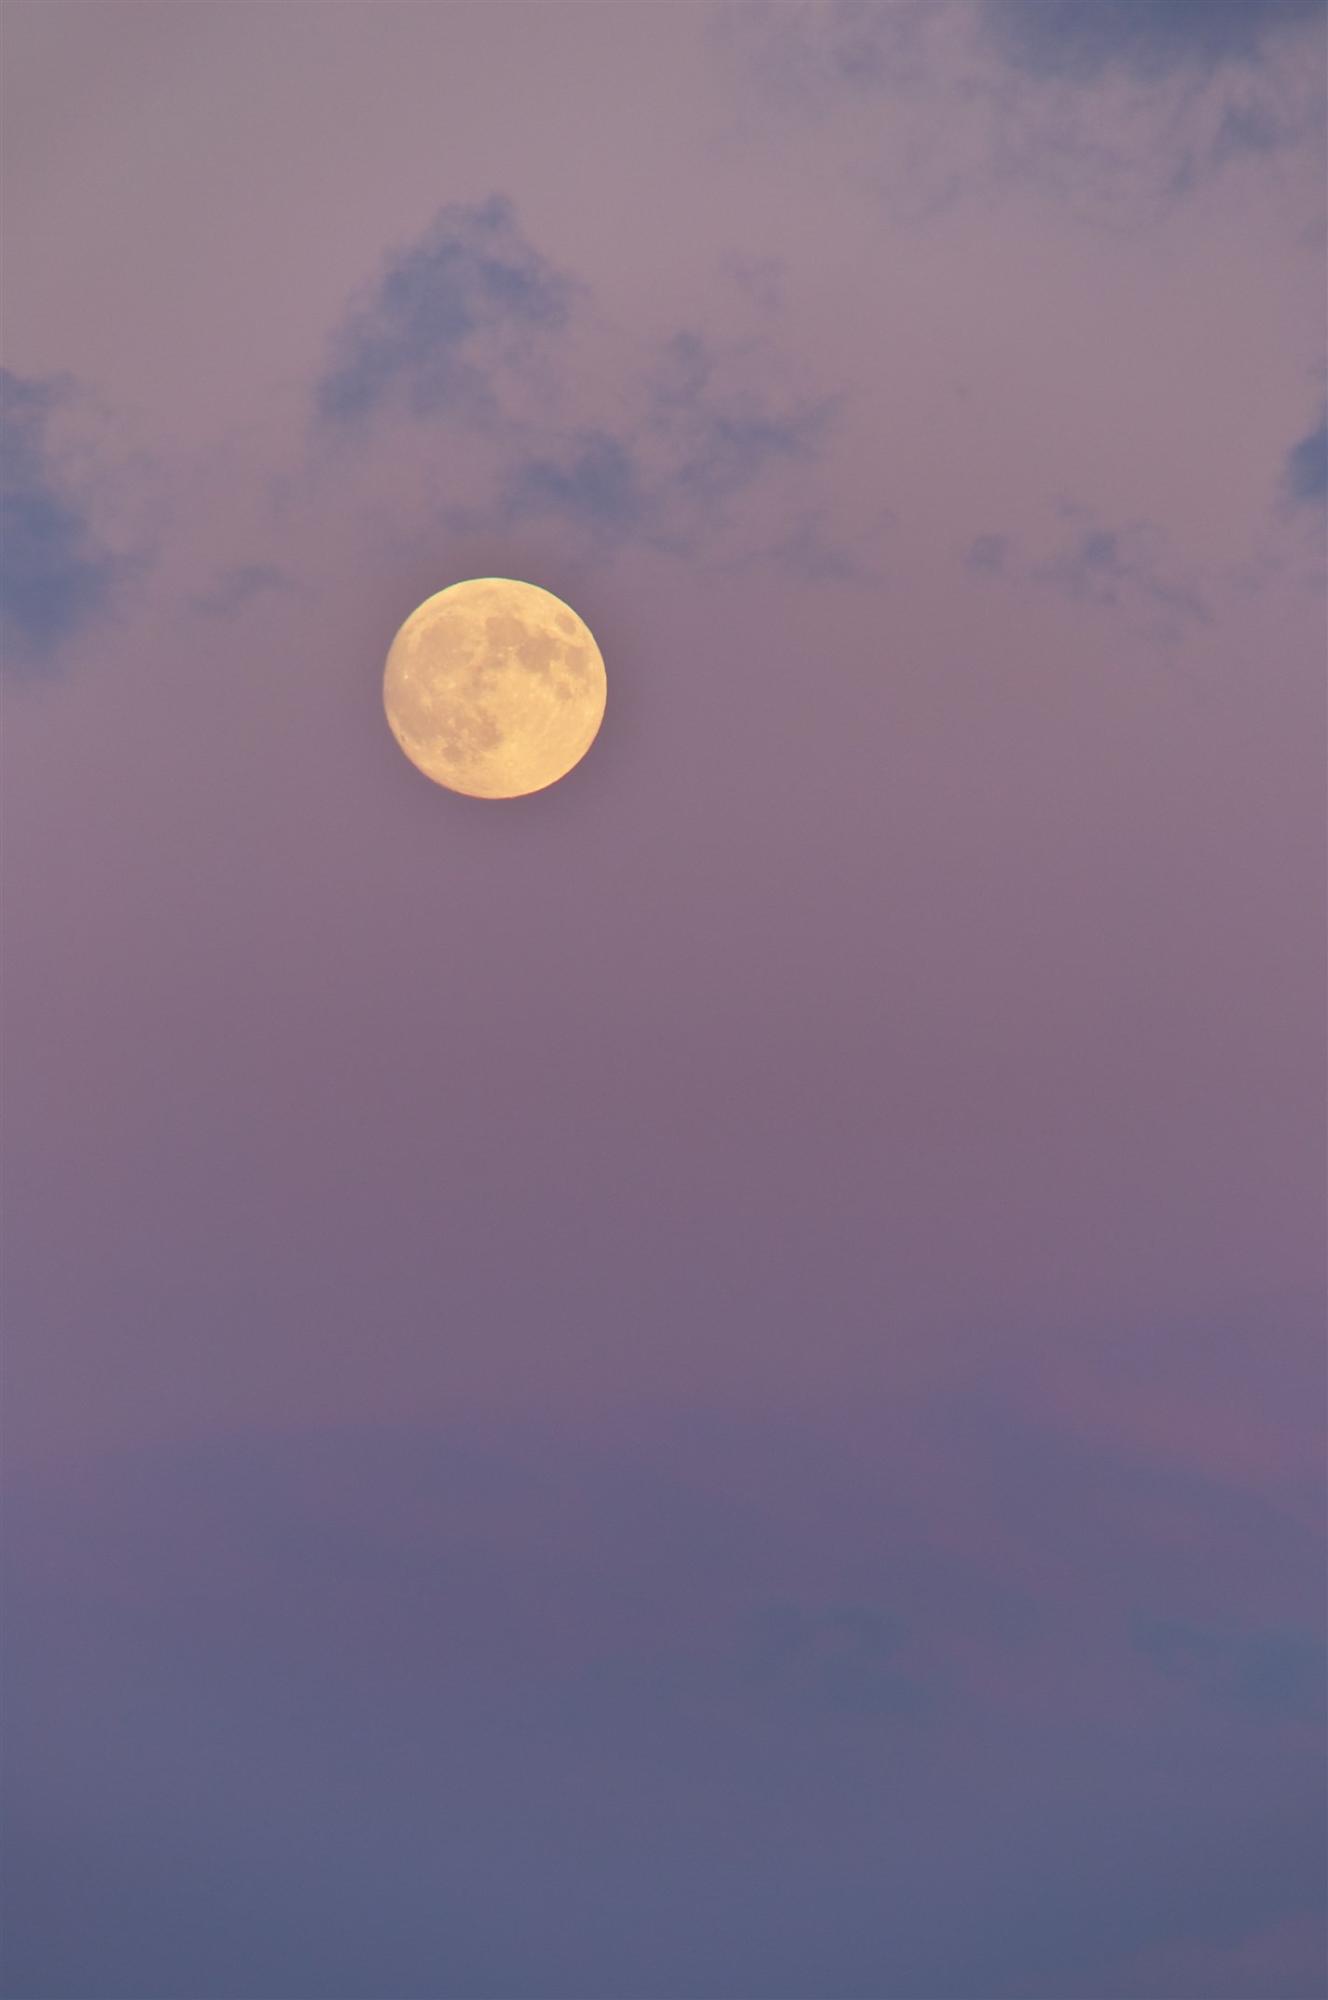 紫色にグラデーションがかった空に満月が浮かんだ写真